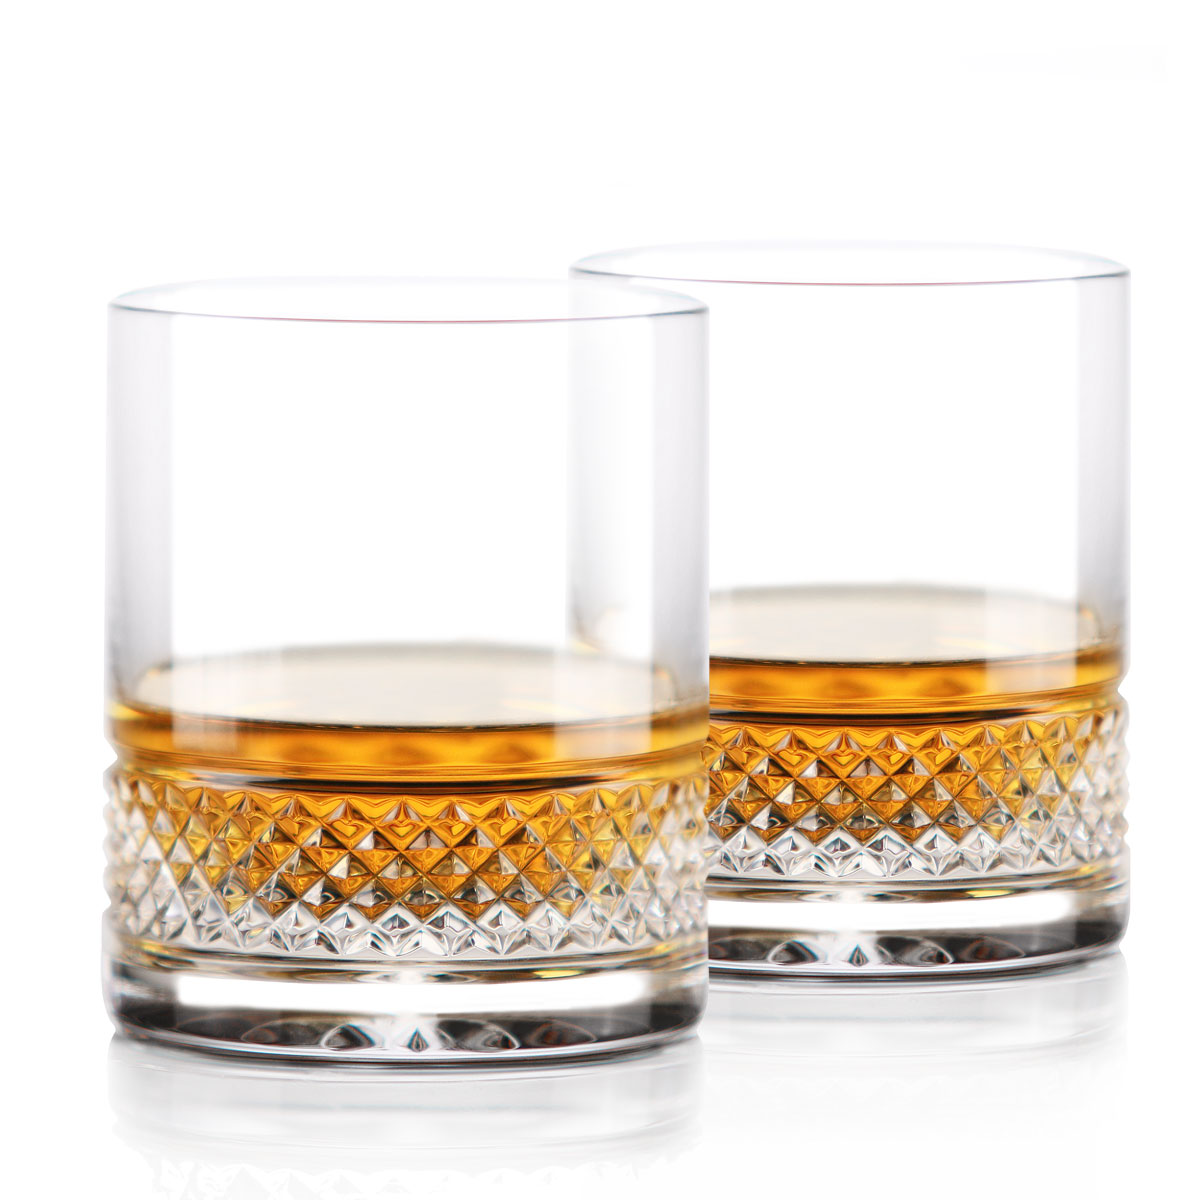 Cashs Ireland Cooper Irish Whiskey DOF Glass, Pair